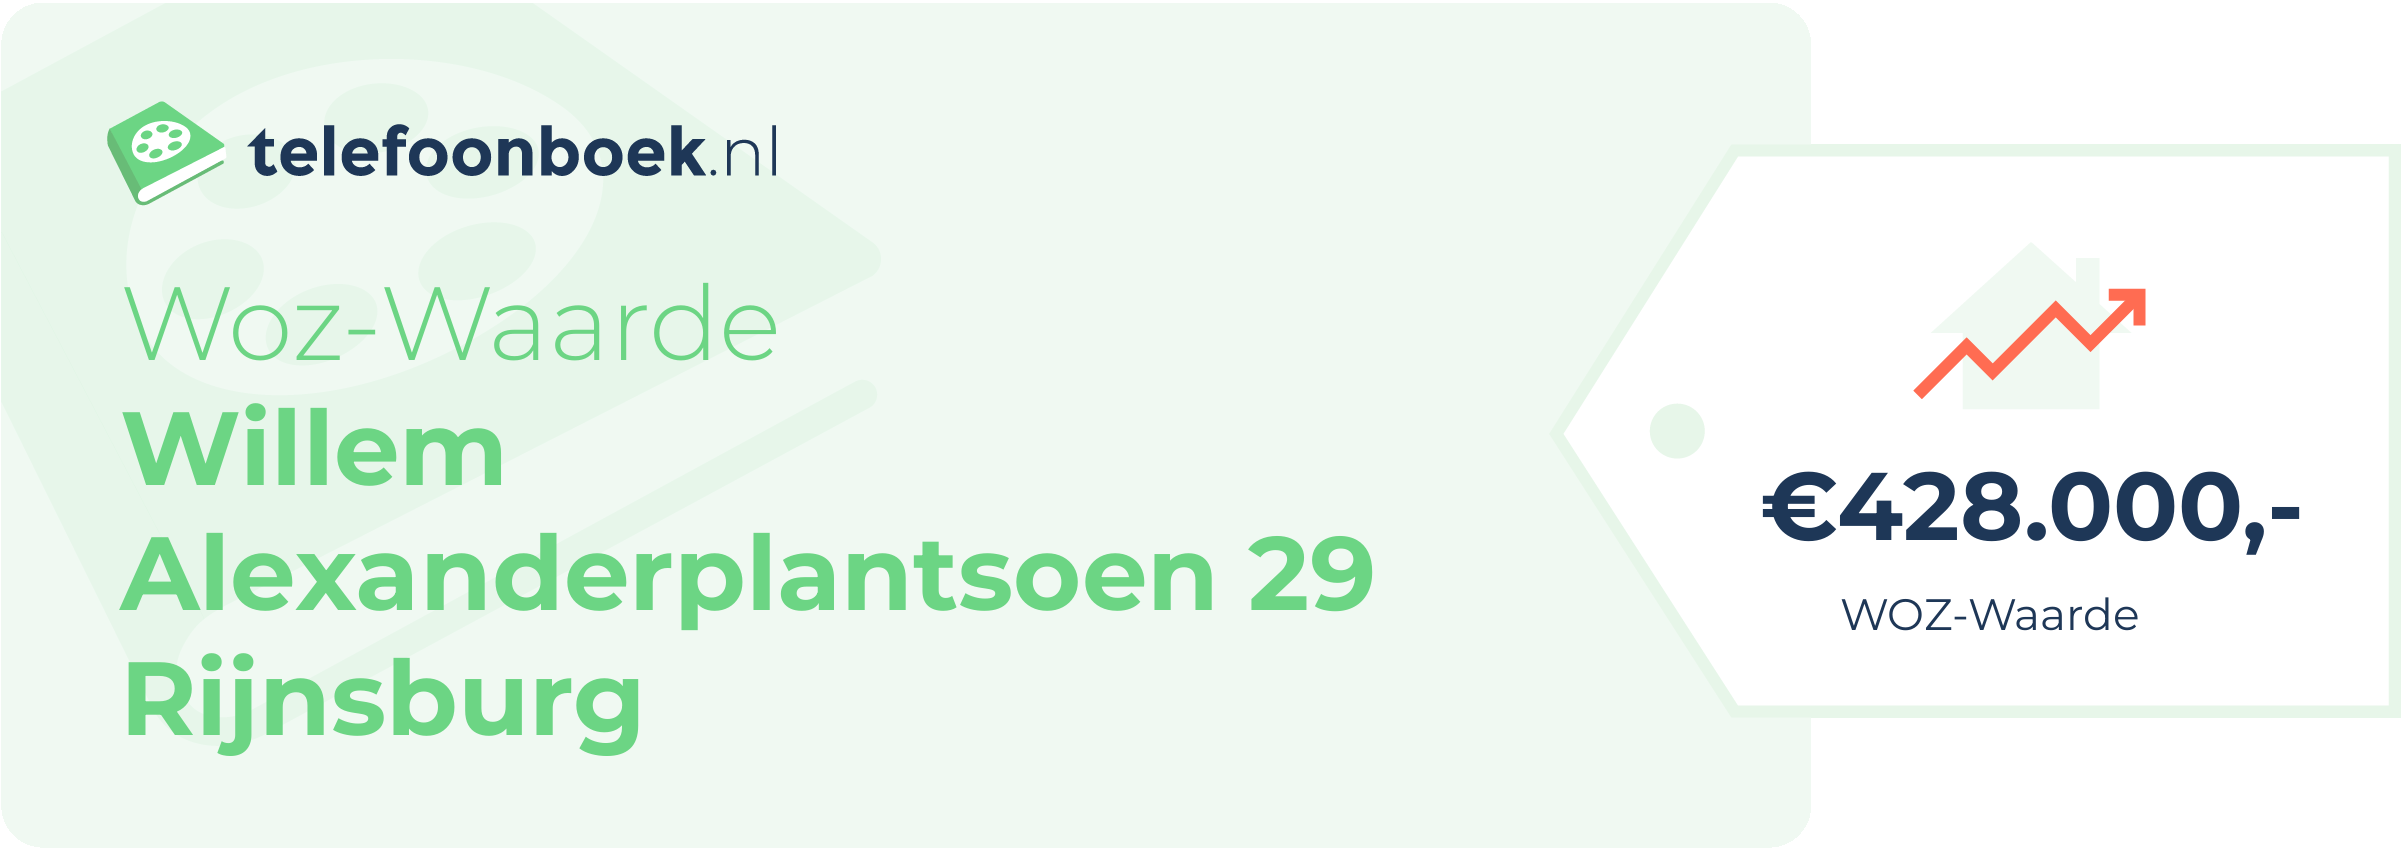 WOZ-waarde Willem Alexanderplantsoen 29 Rijnsburg